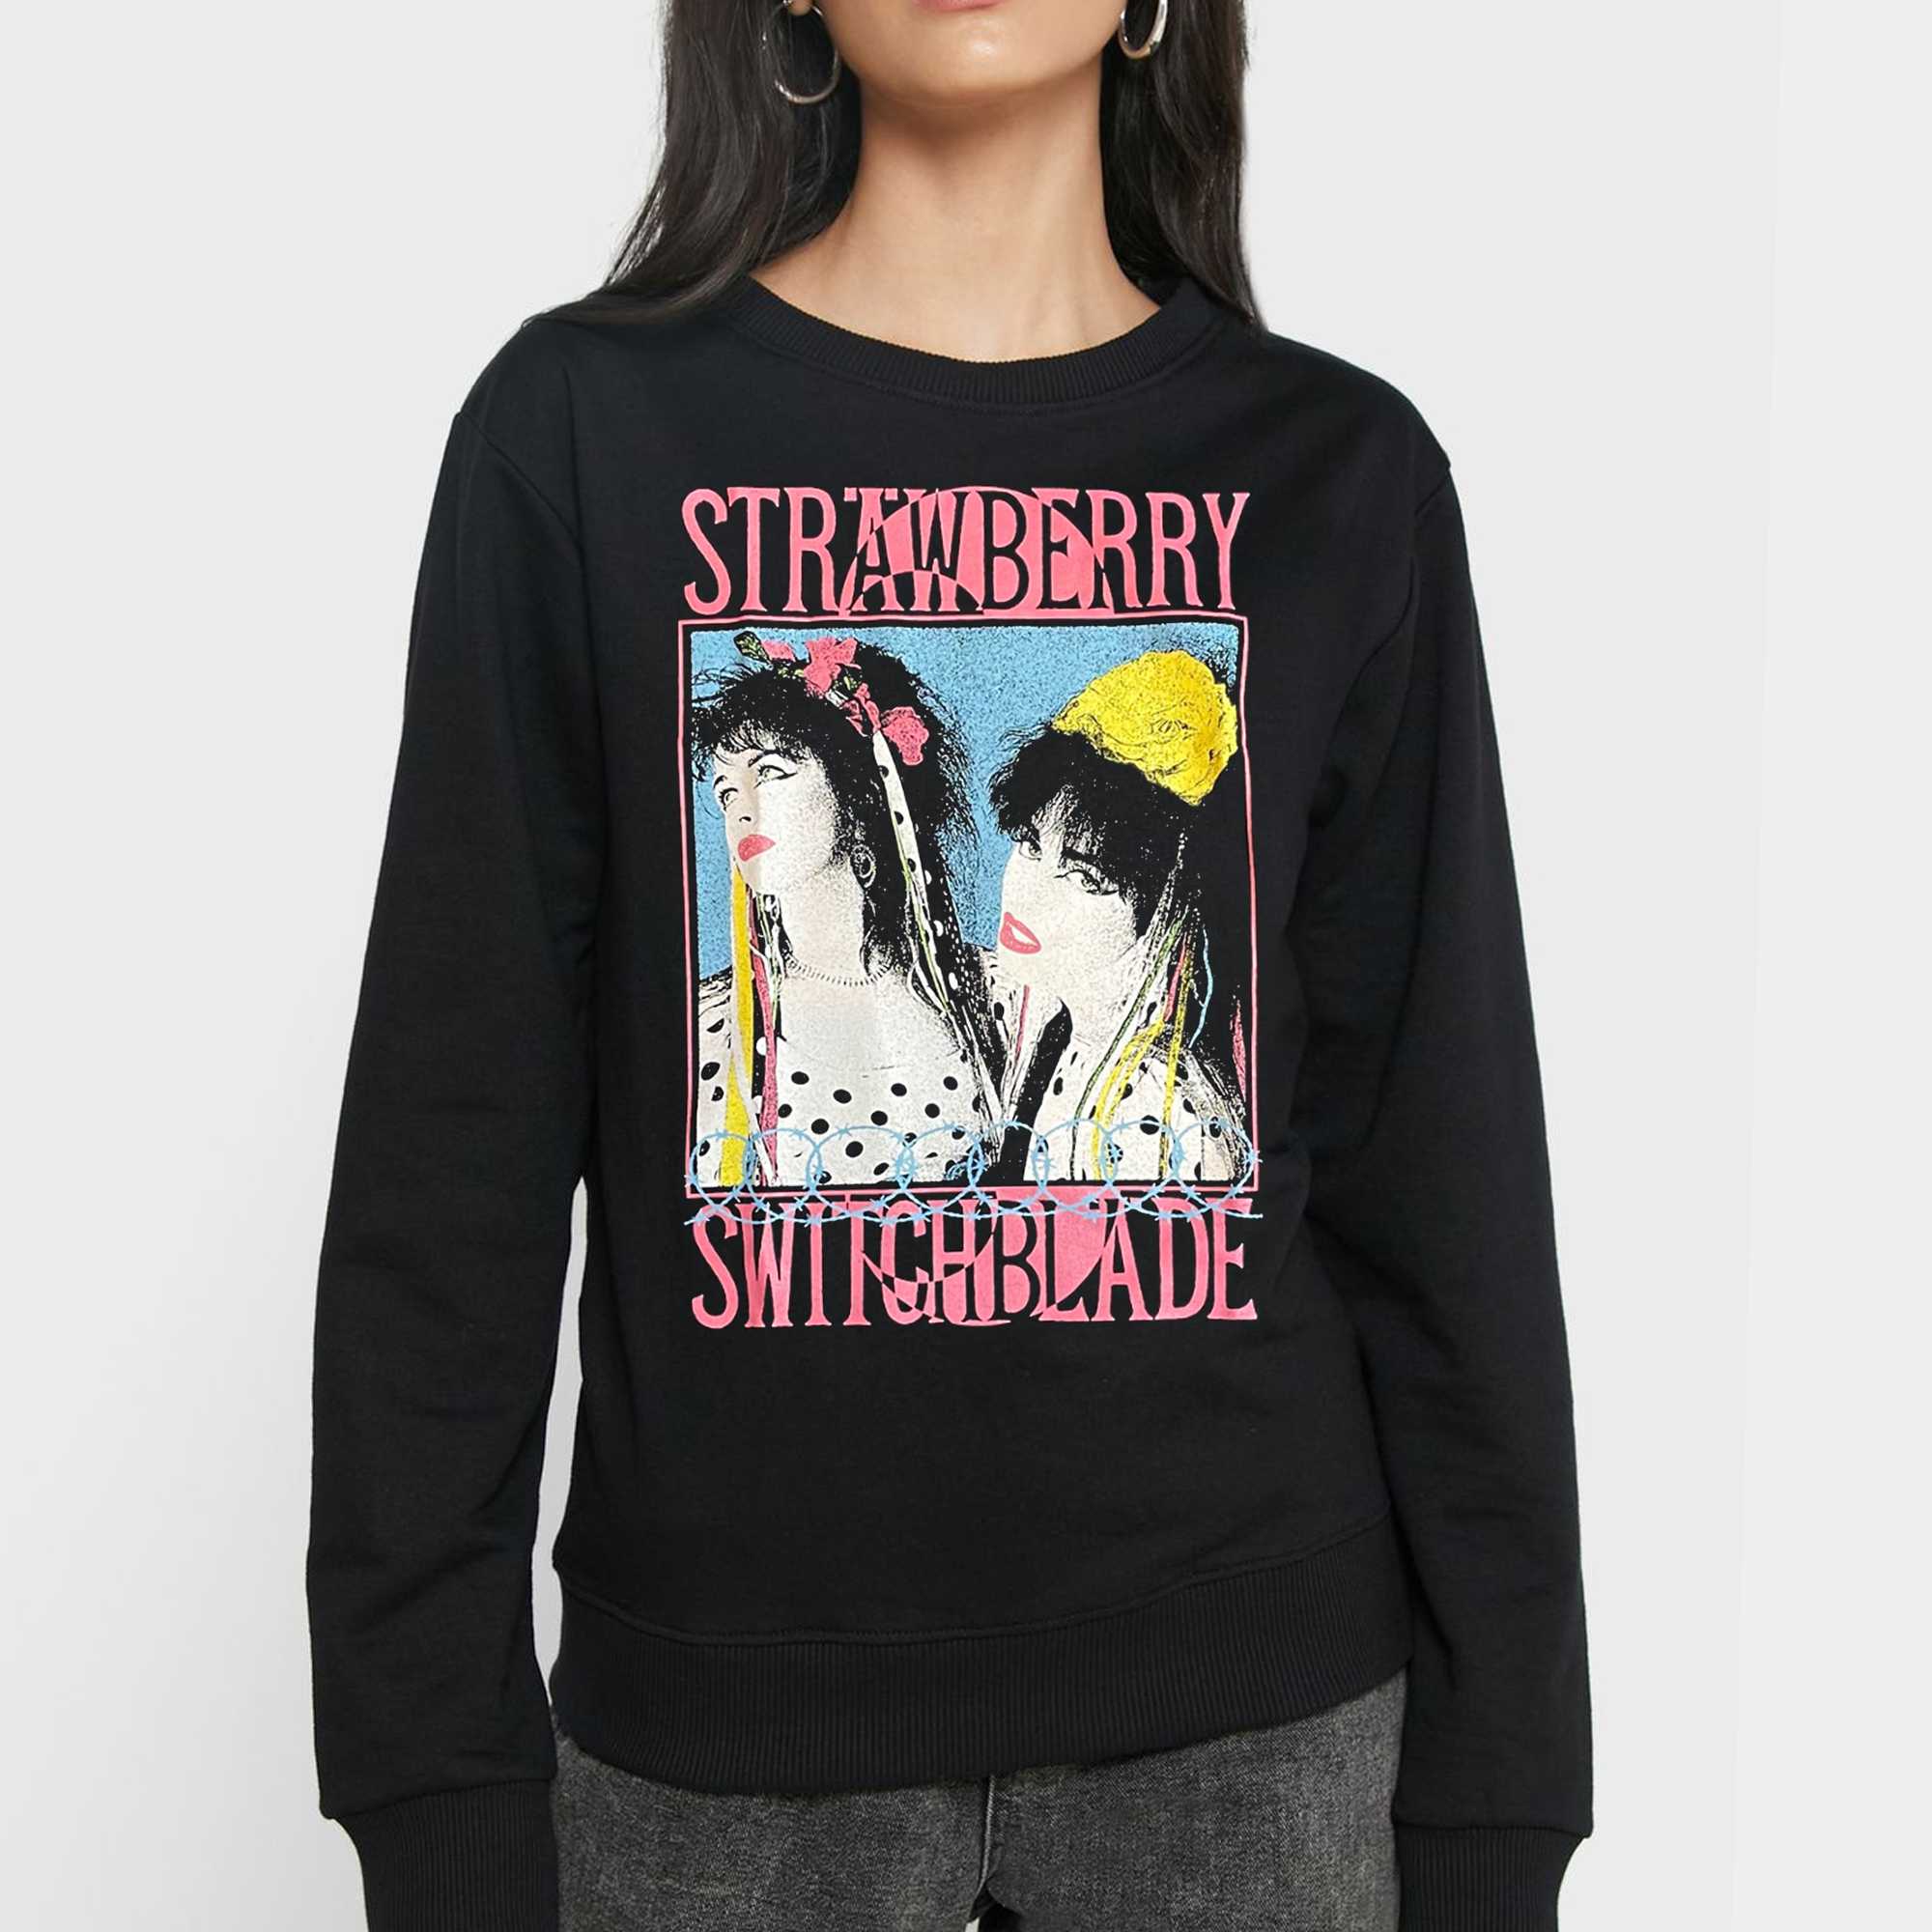 Strawberry Switchblade T-shirt - Shibtee Clothing